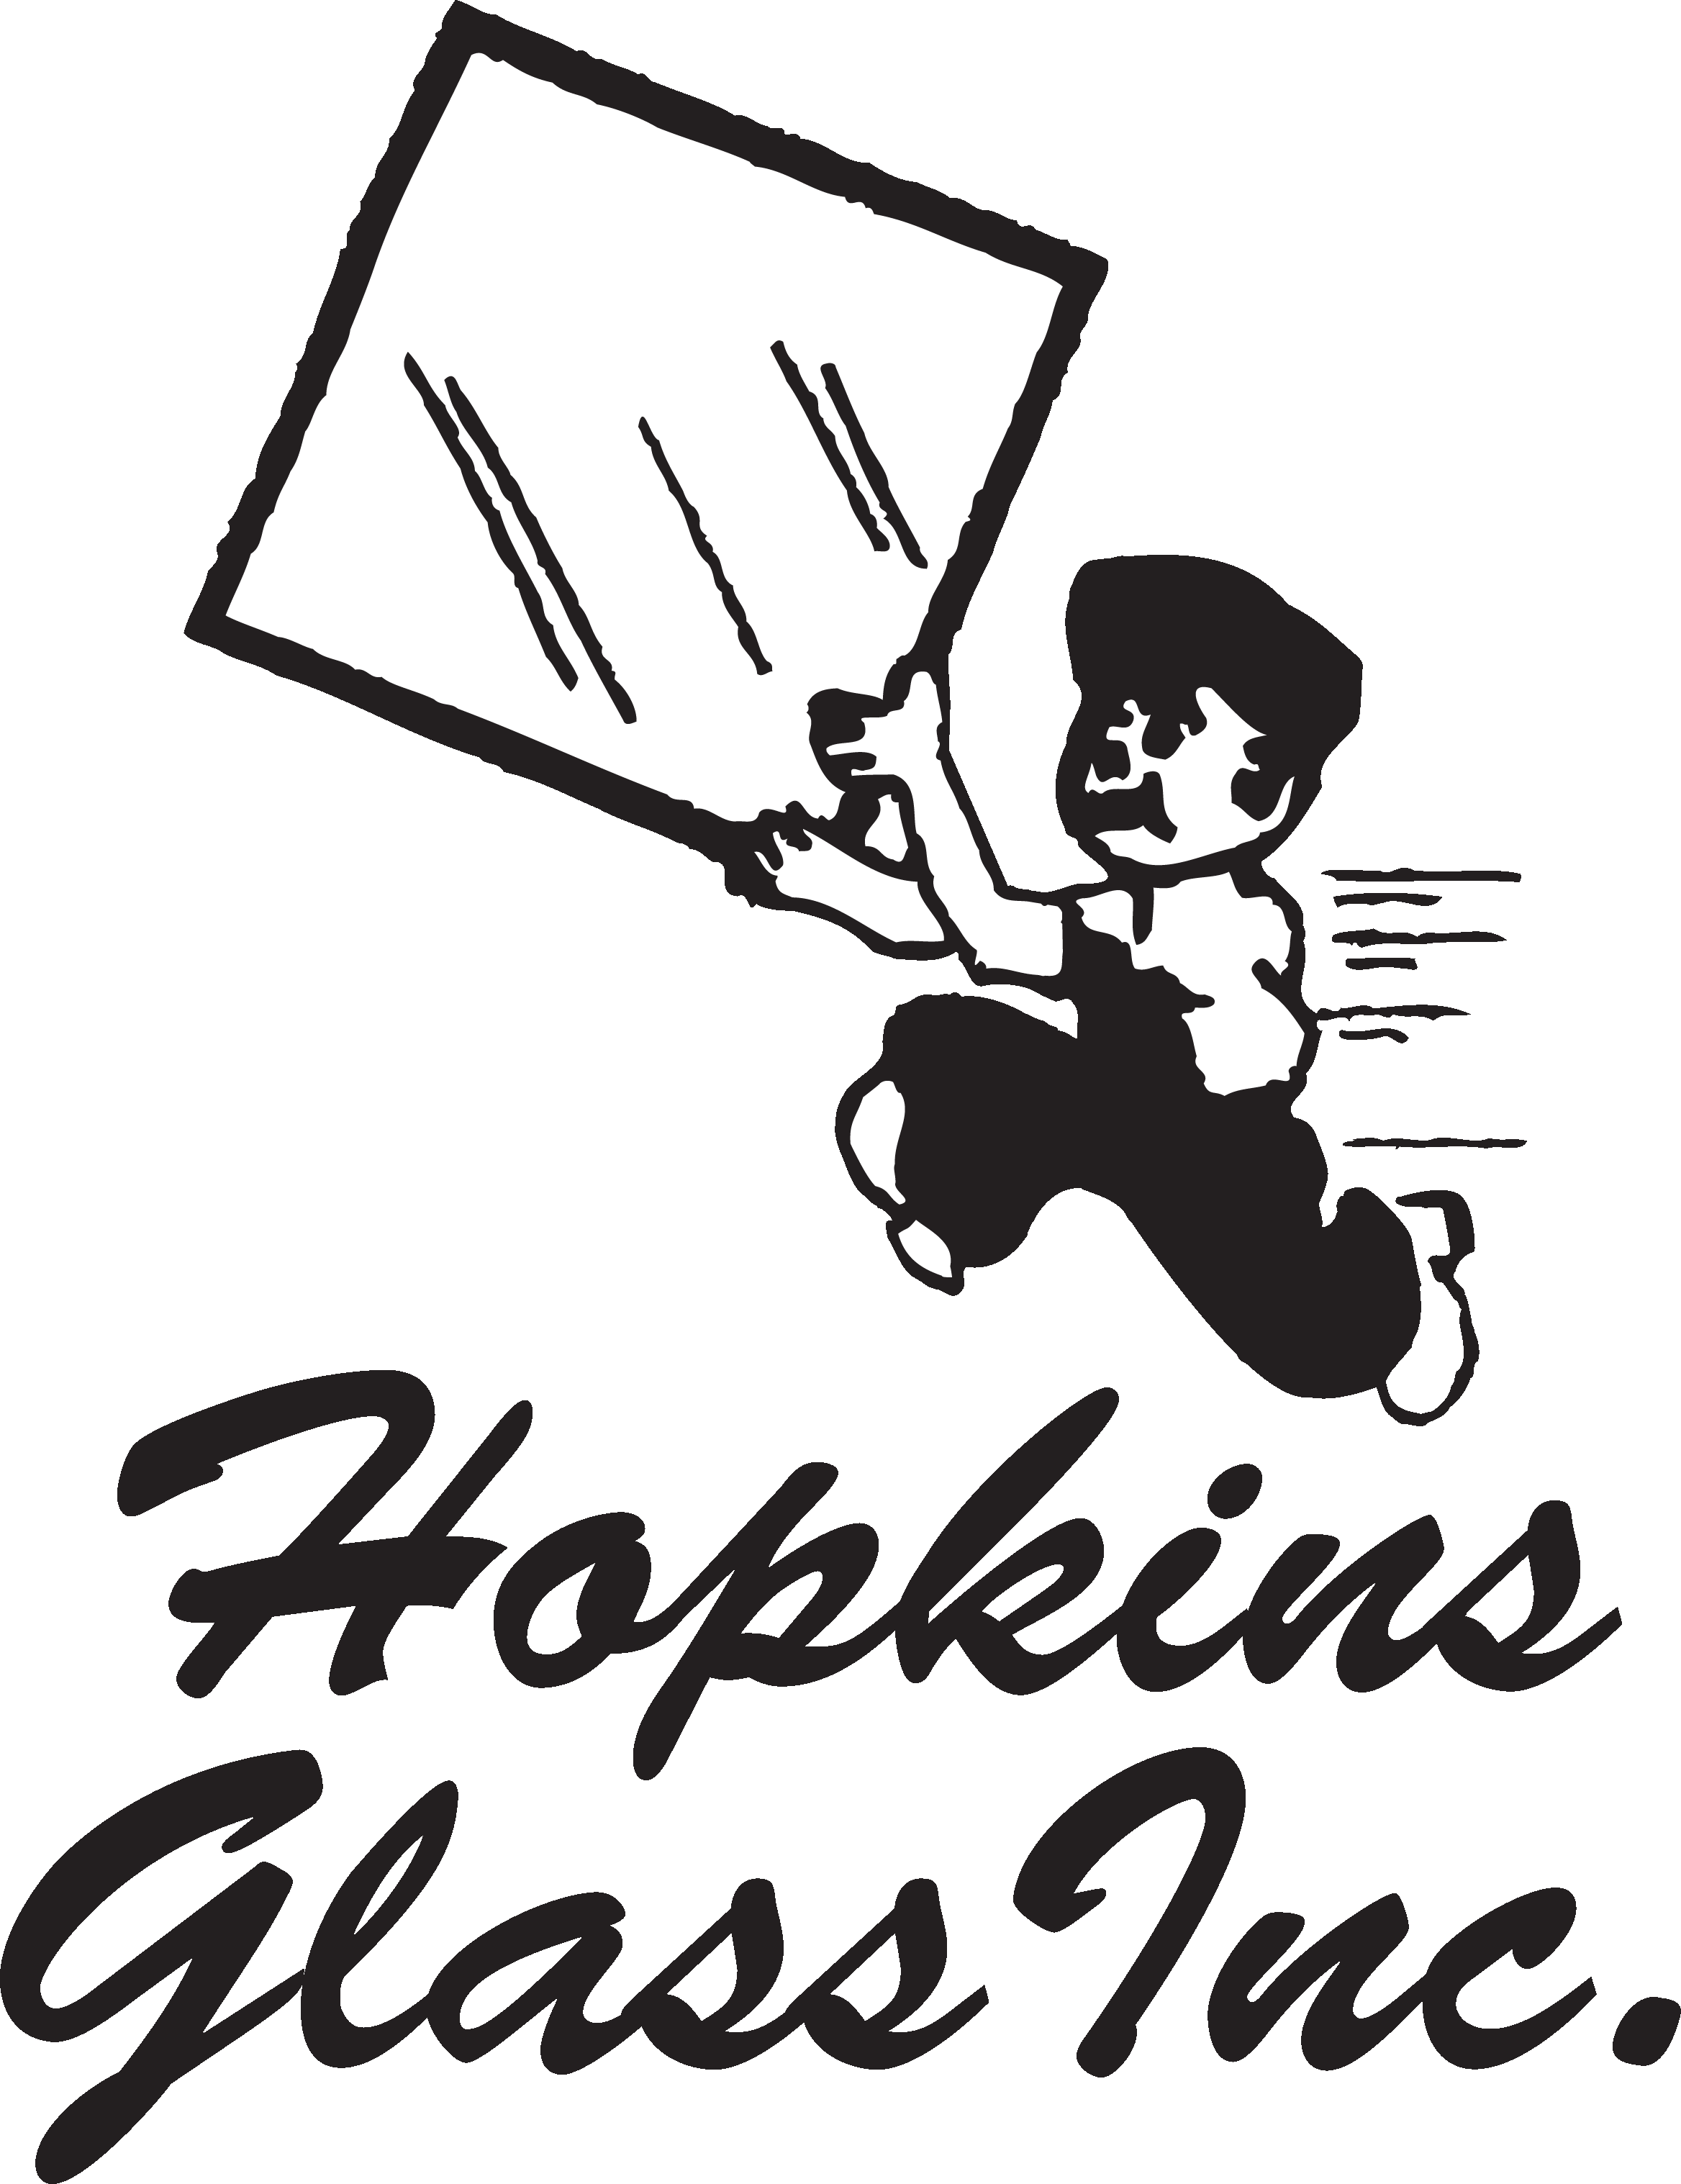 Hopkins Glass Inc.